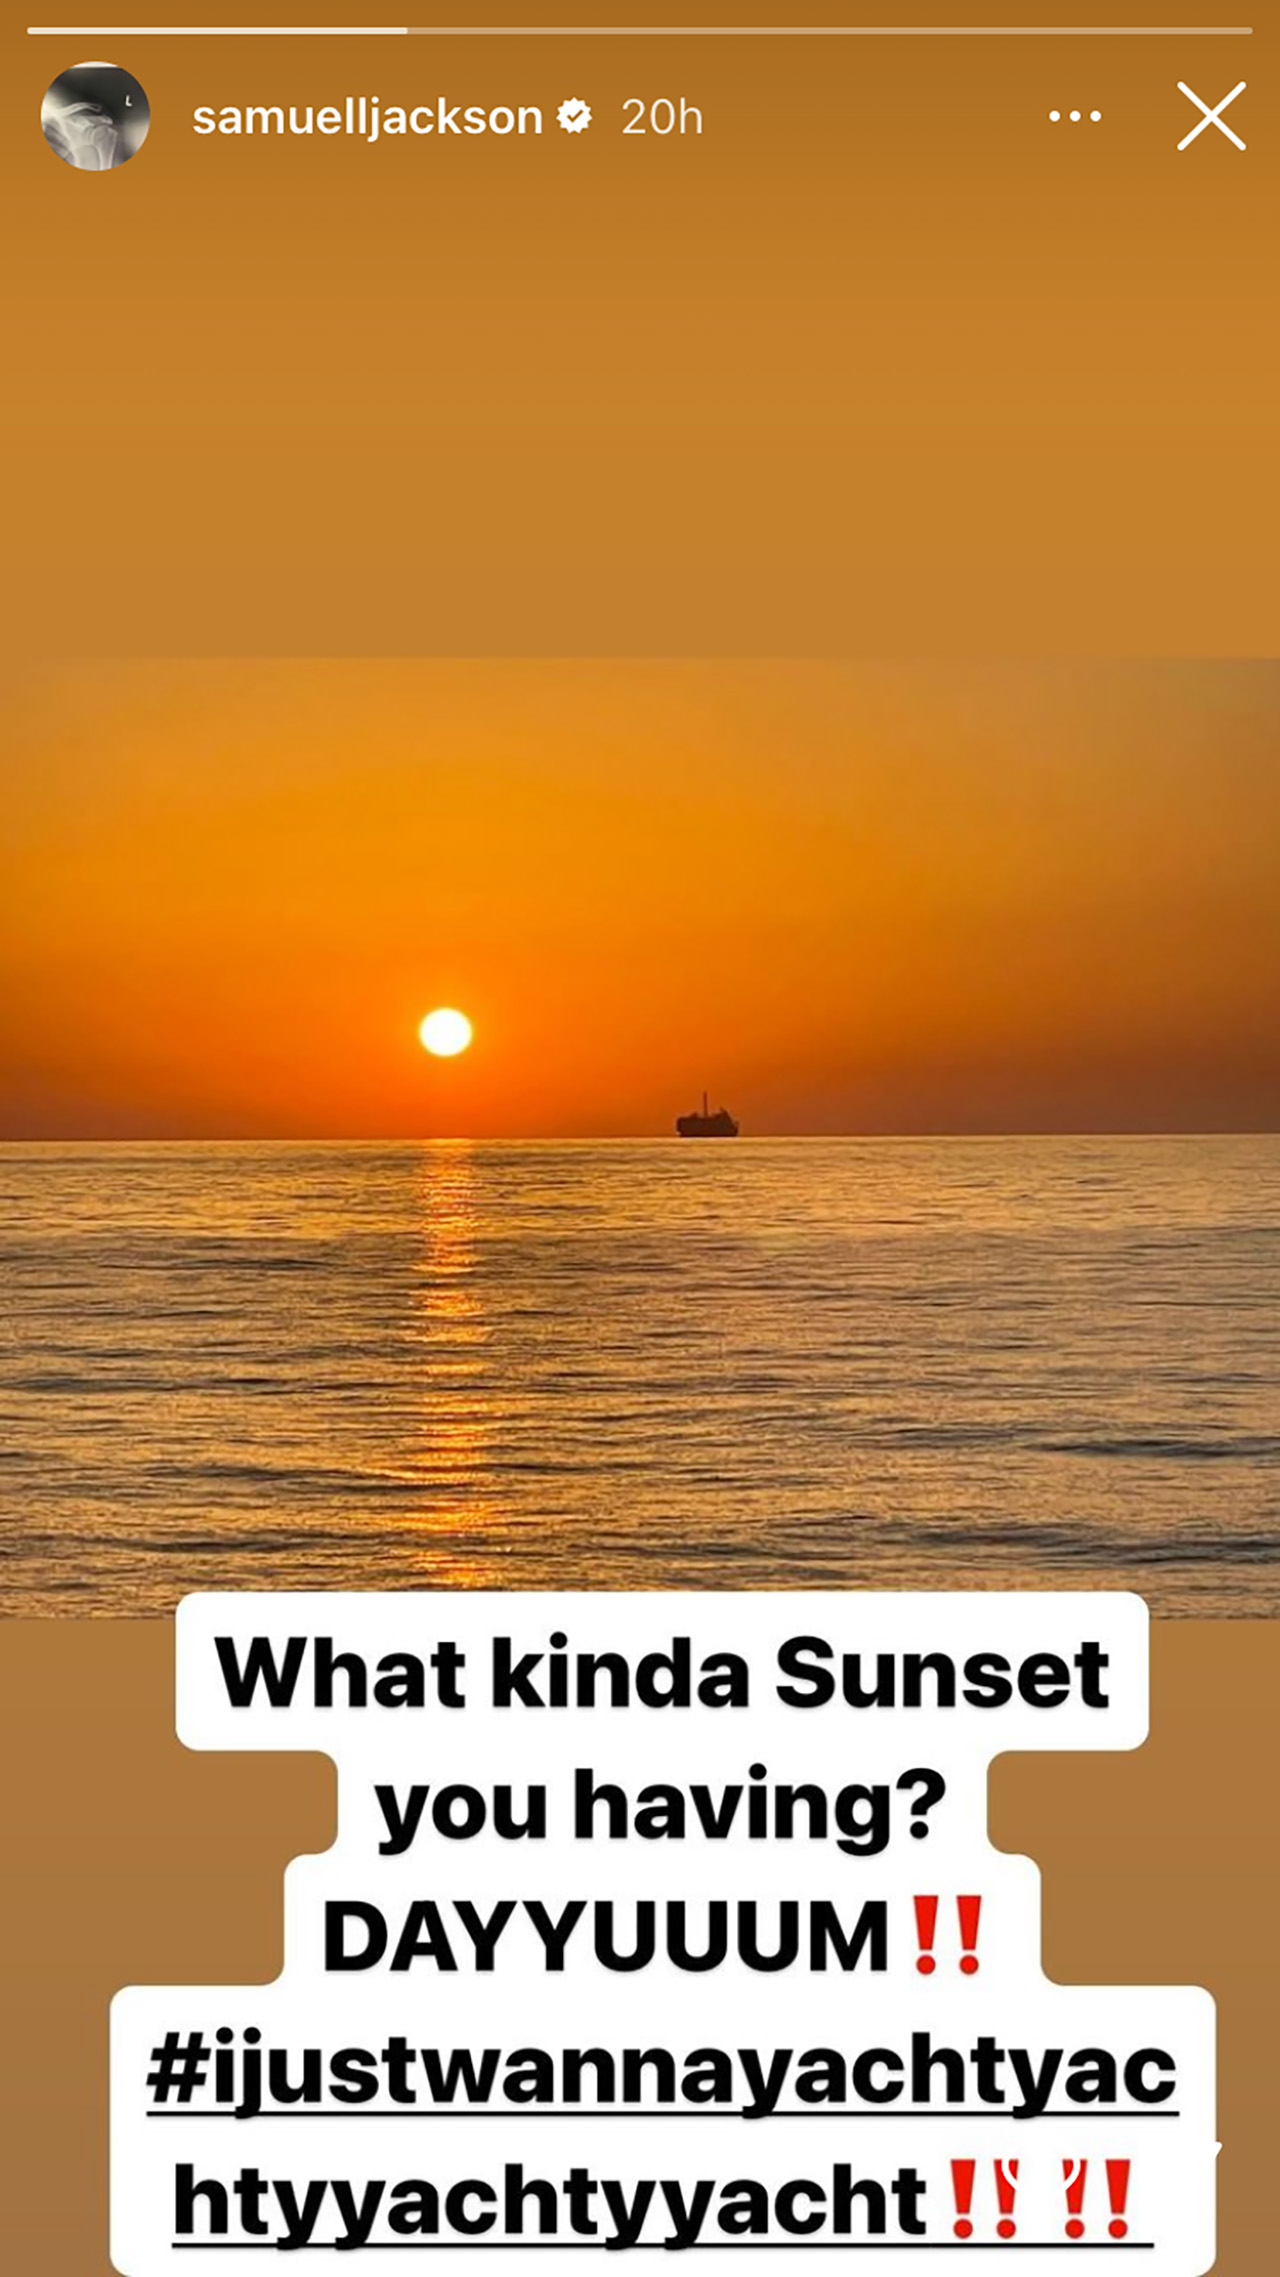 Vue du coucher de soleil de Samuel L. Jackson depuis la capture d'écran de son yacht.